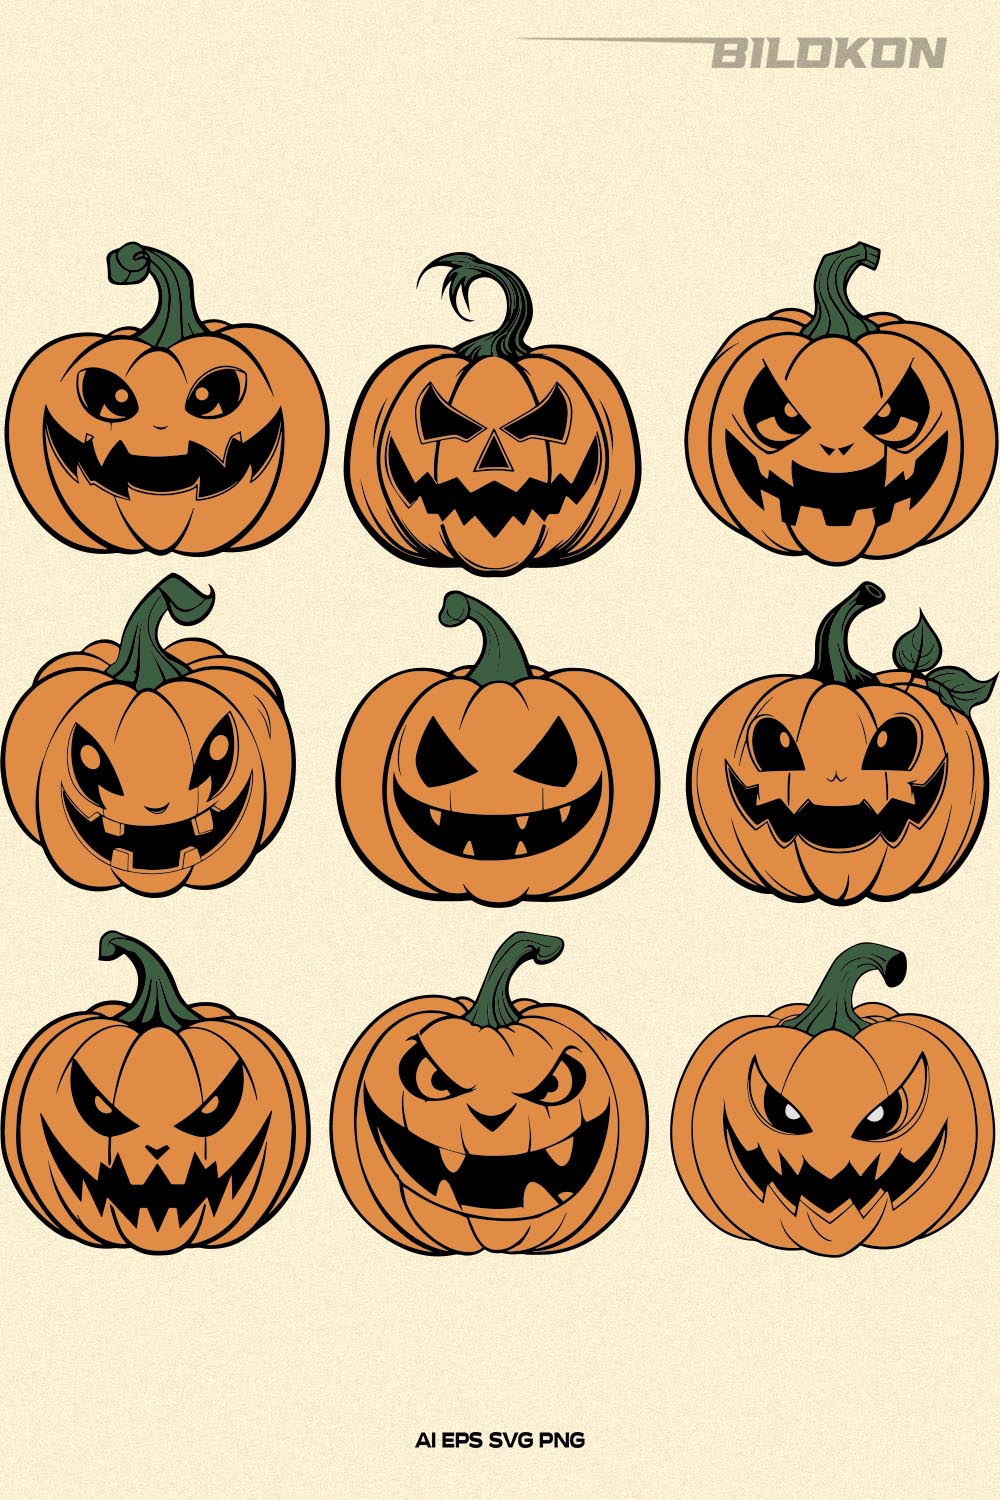 Funny Halloween Pumpkin SVG, Halloween Pumpkin Design pinterest preview image.